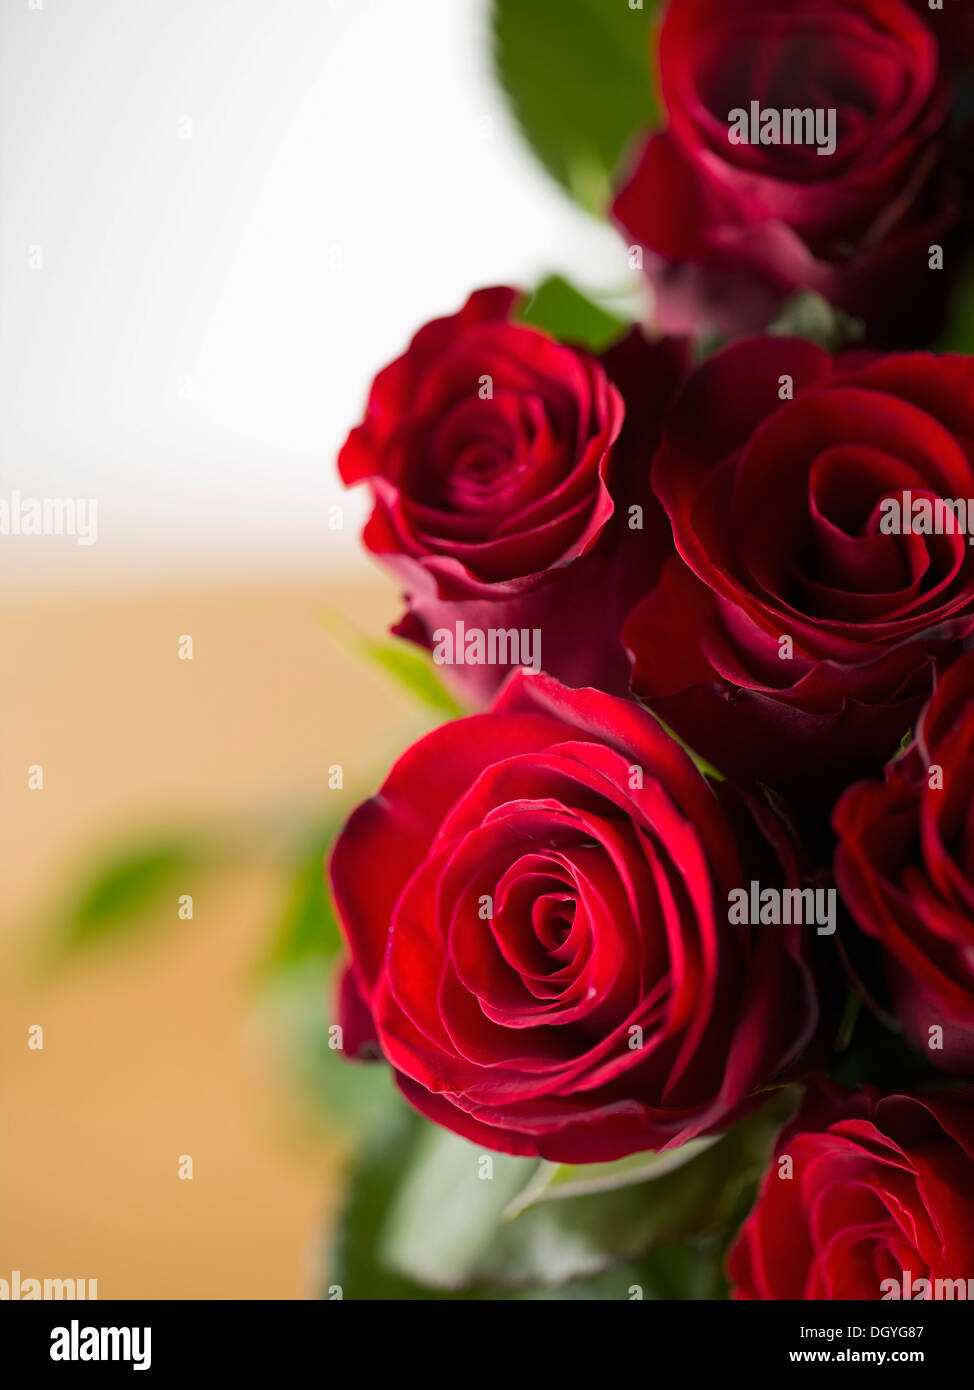 Un bouquet de roses rouges, high angle view, close-up Banque D'Images